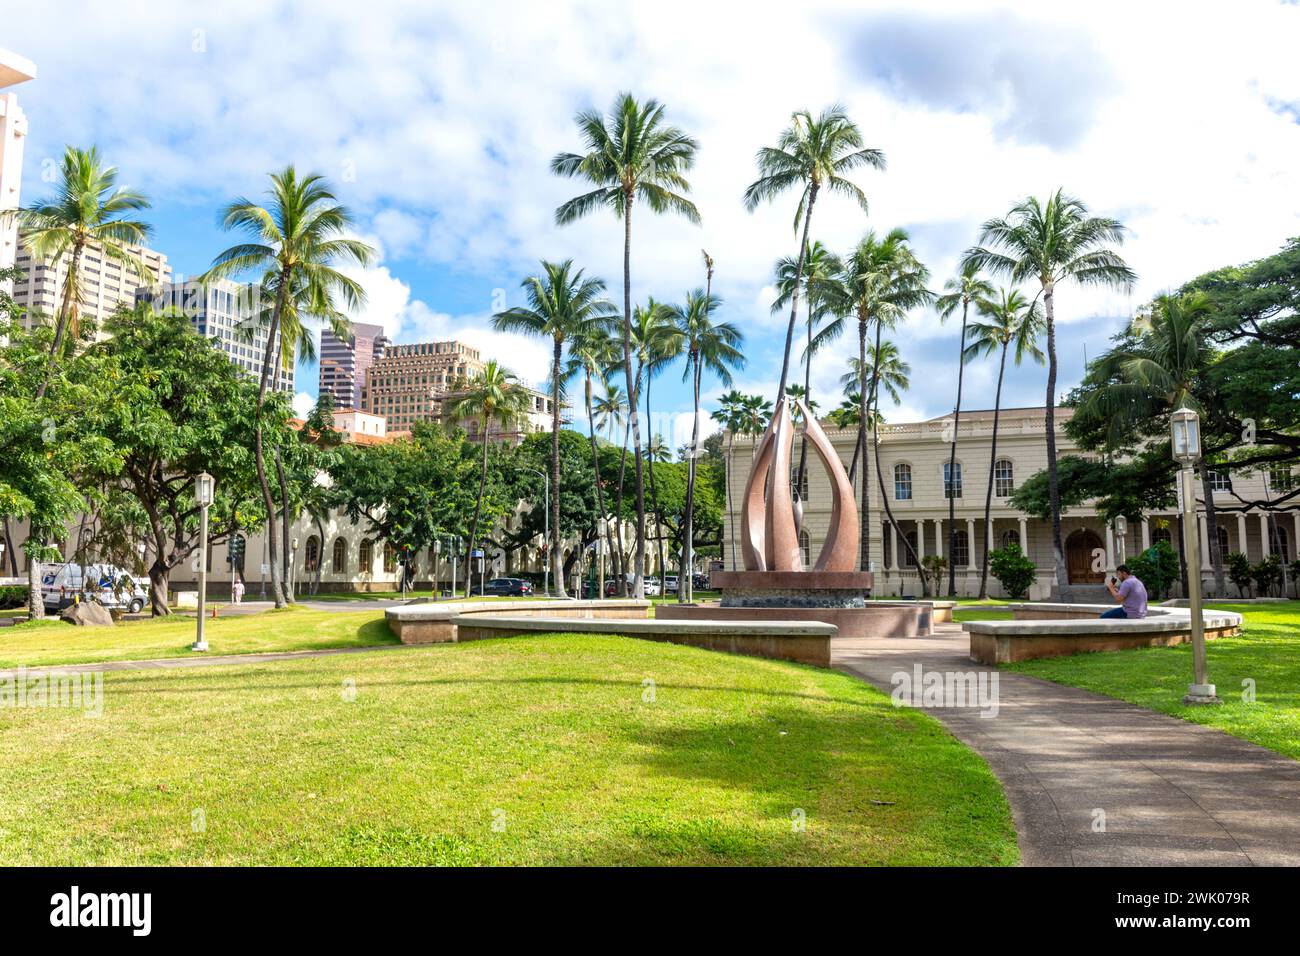 Ka Ho'oilina Mau Loa Fountain, Queen Street, Waikiki, Honolulu, Oahu, Hawaii, United States of America Stock Photo